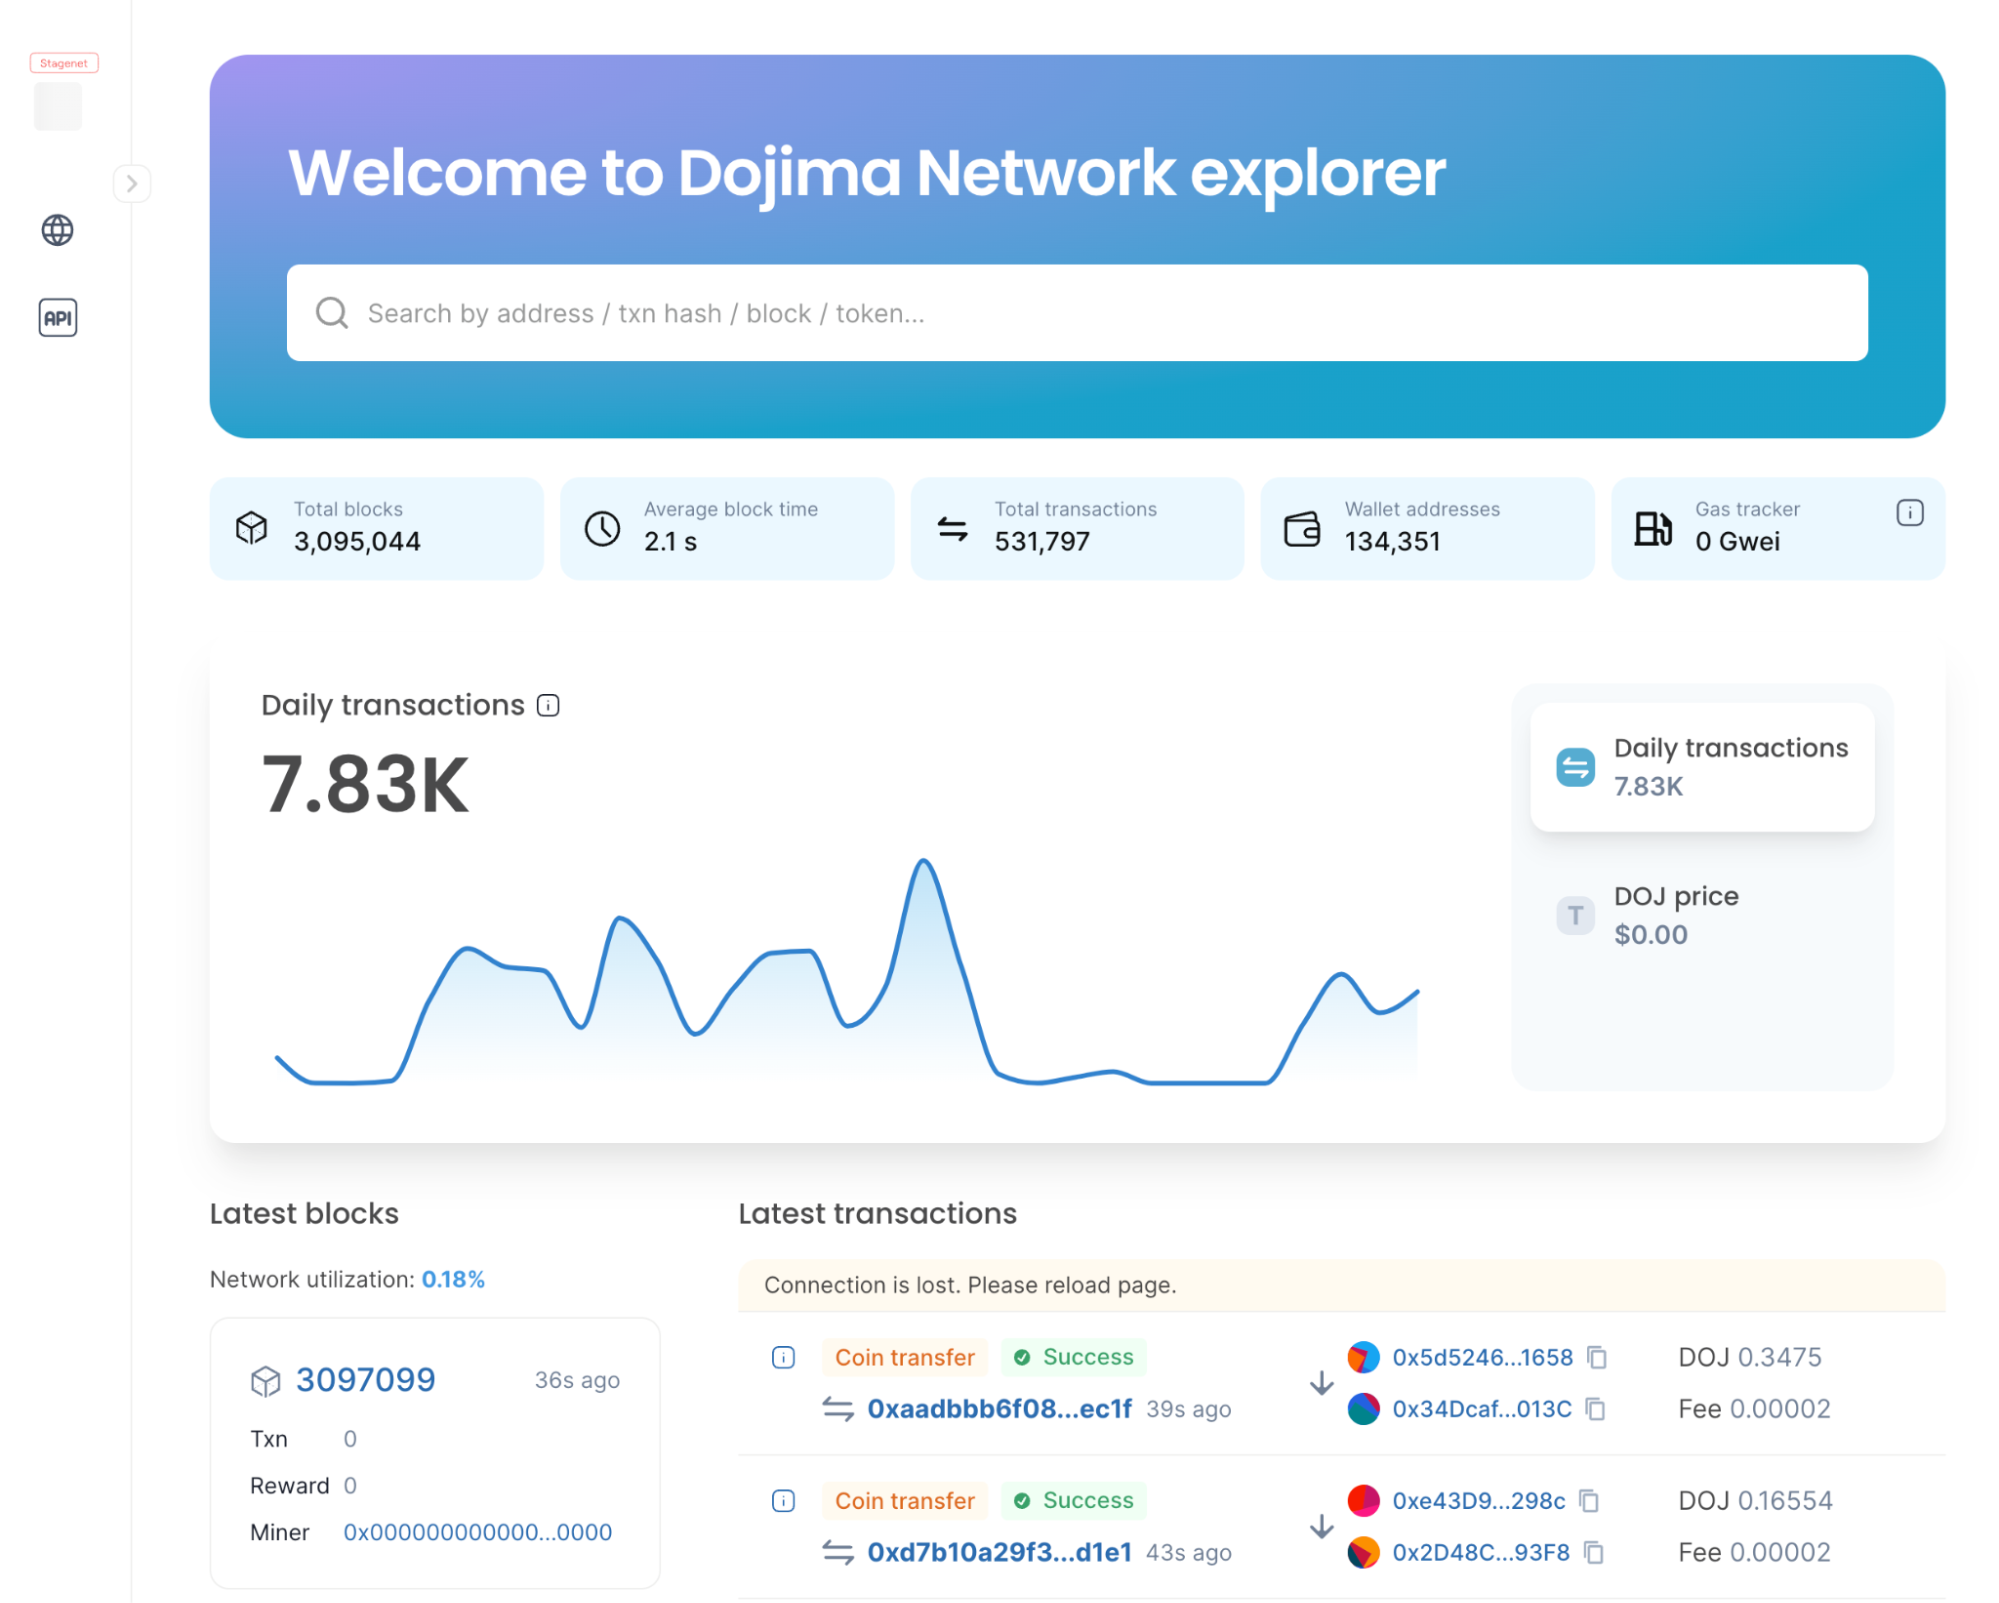 Dojima cung cấp một trình duyệt omnichain cho một cái nhìn toàn diện về không gian blockchain.